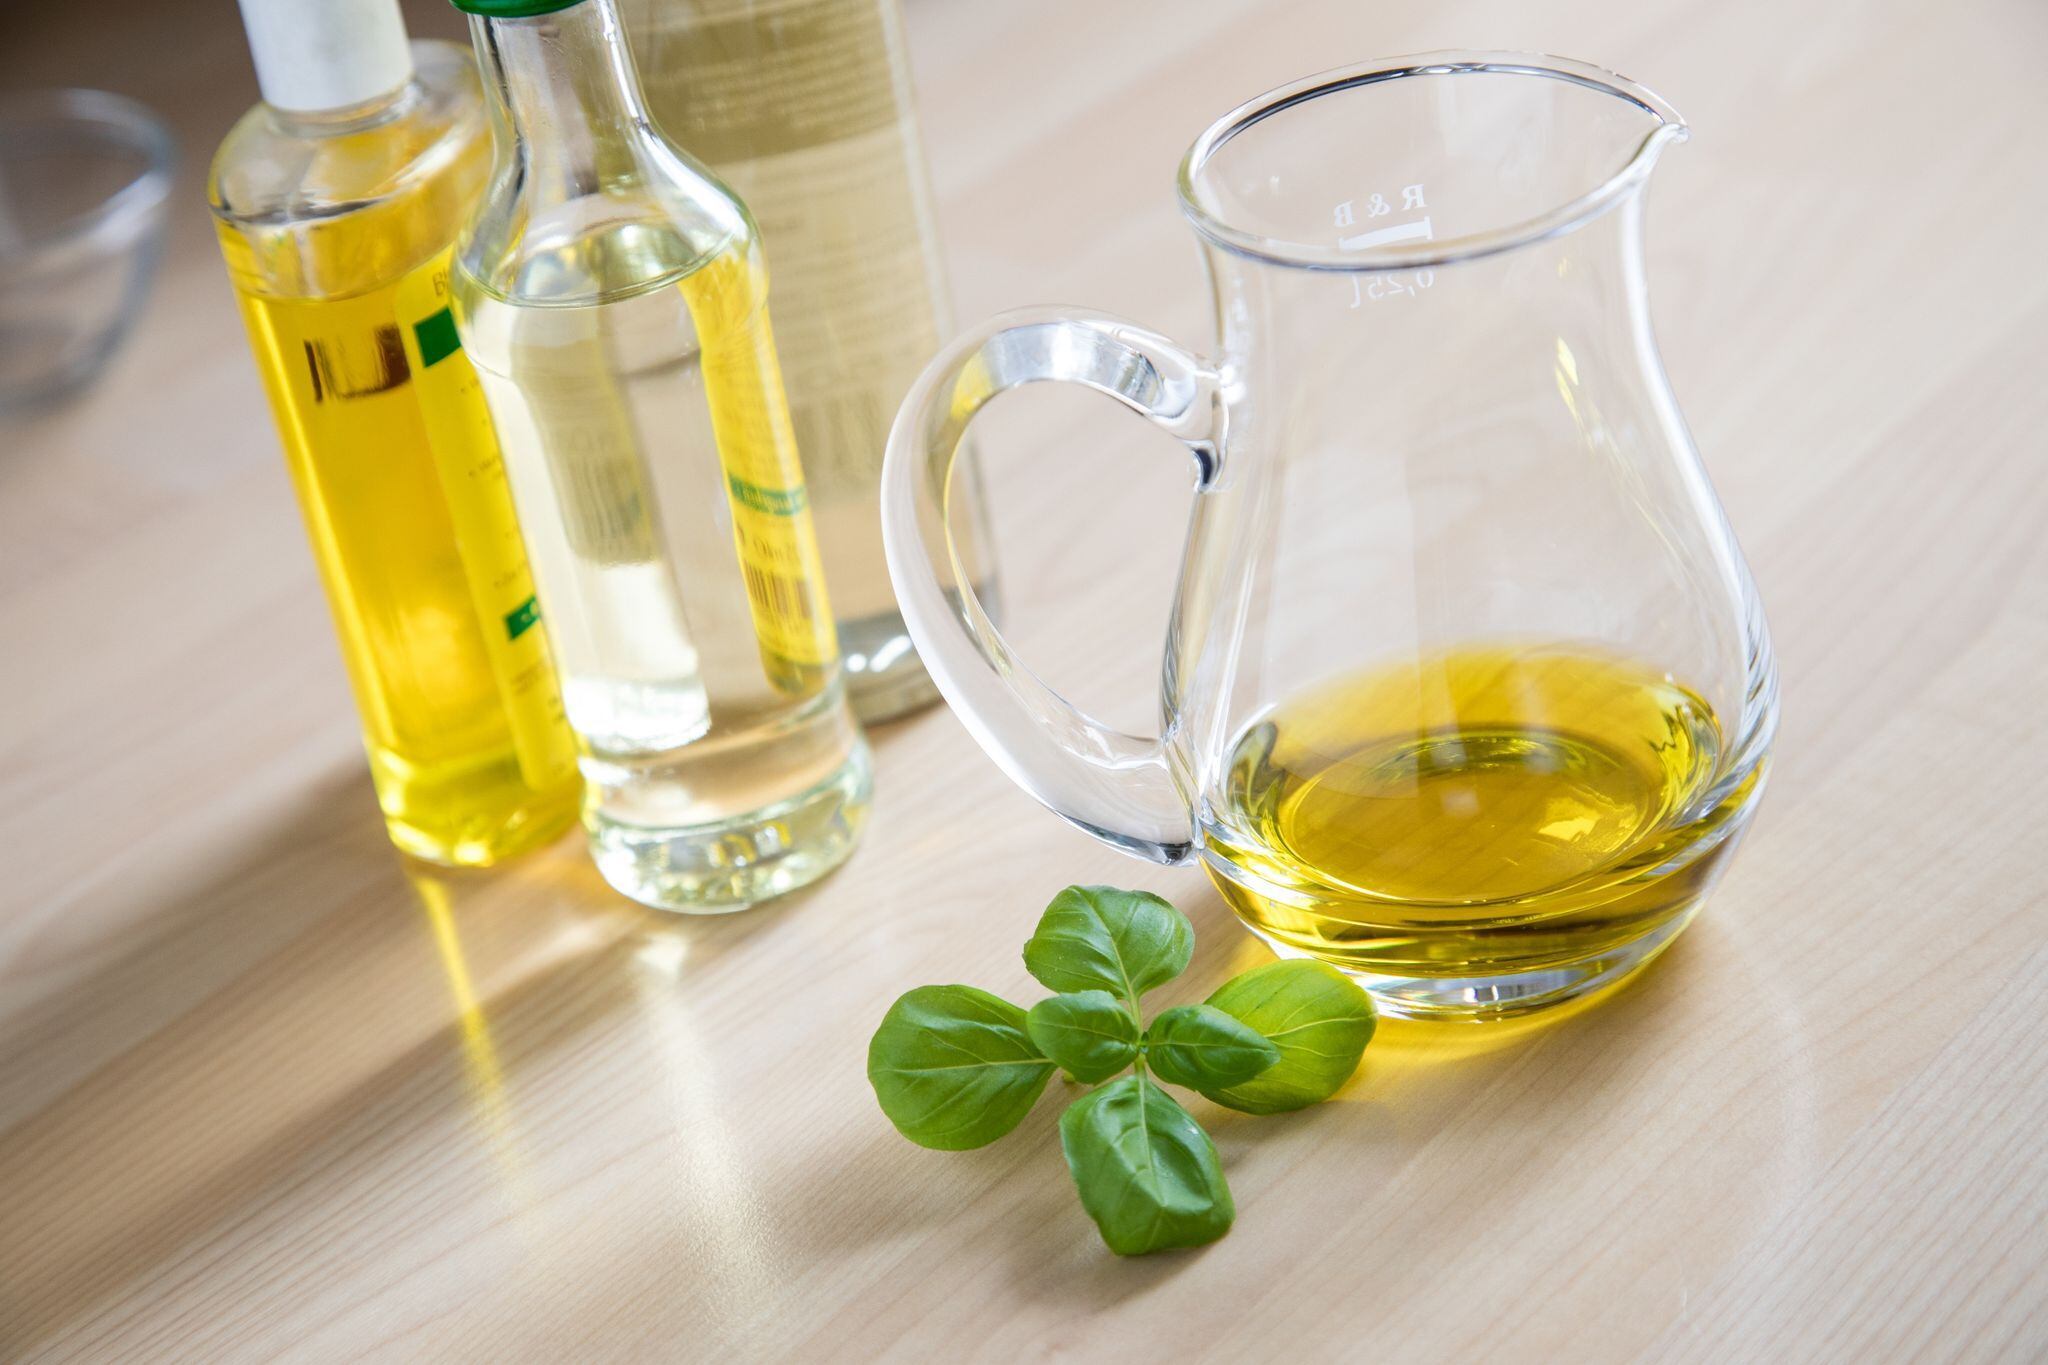 El consumo de aceite de oliva protege contra la inflamación, el estrés oxidativo y el riesgo cardiovascular según las evidencias científicas (Christin Klose/dpa)